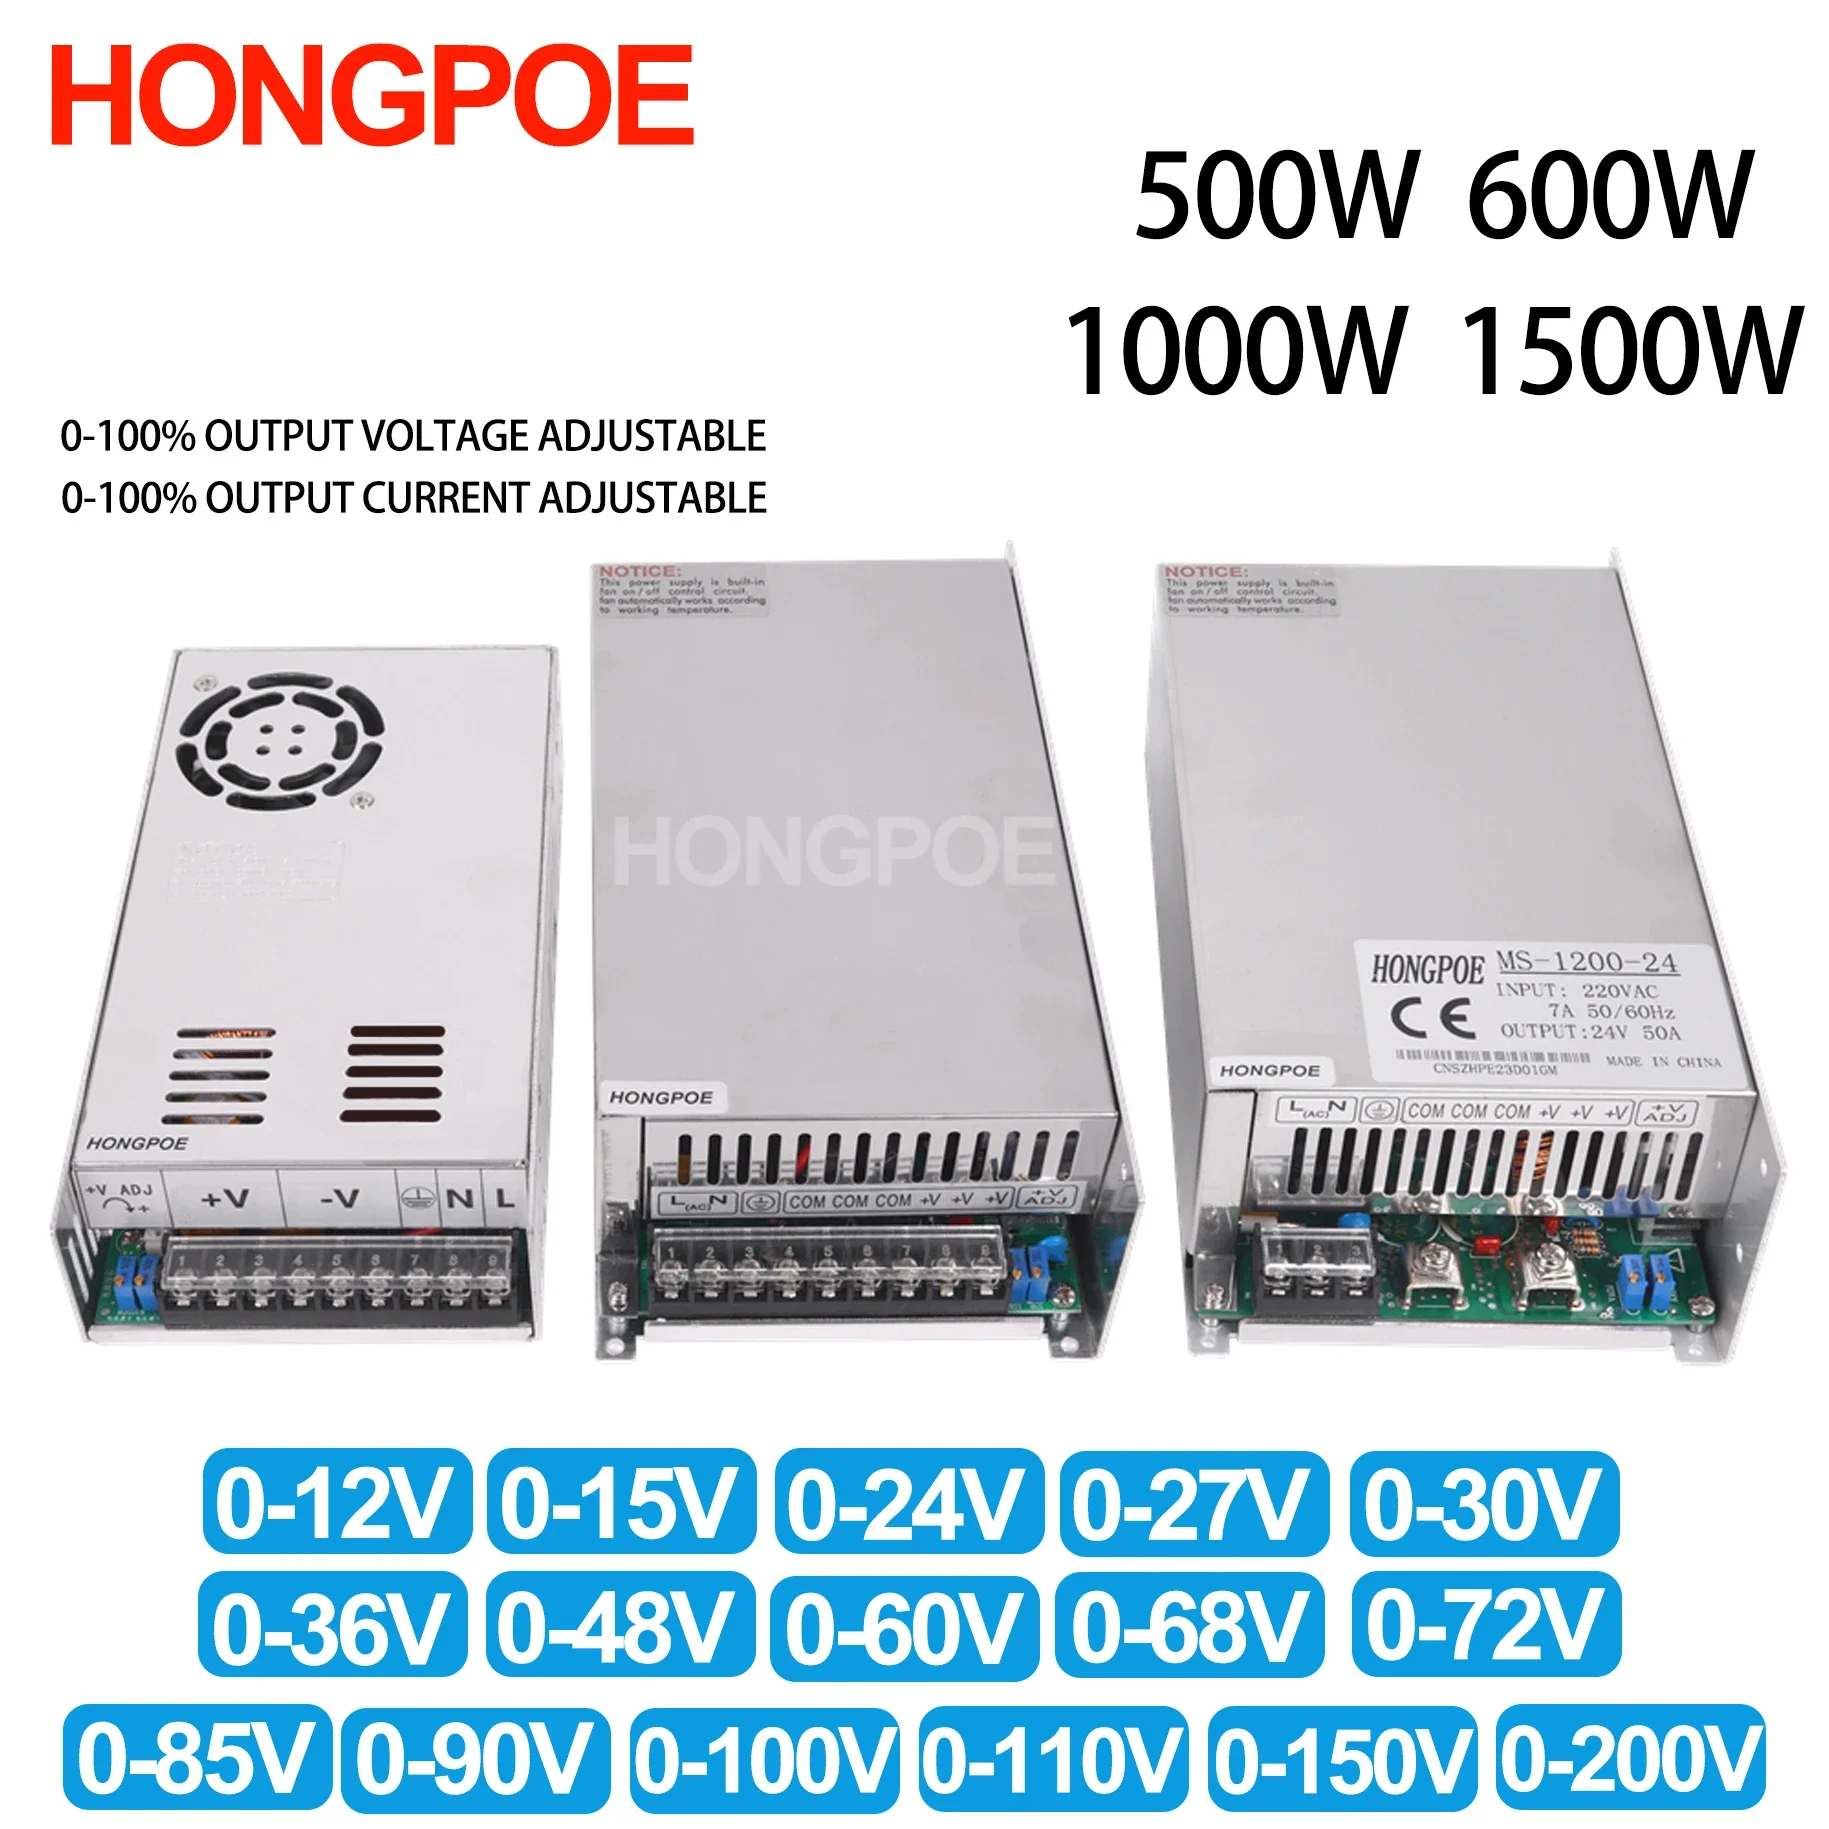 

Adjustable 500W 600W 1000W 1200W 1500W Power Supply 0-12V 15V 24V 36V 48V 60V 72V 85V 90V 110V 150V 200V 110/220V Ac To Dc Smps